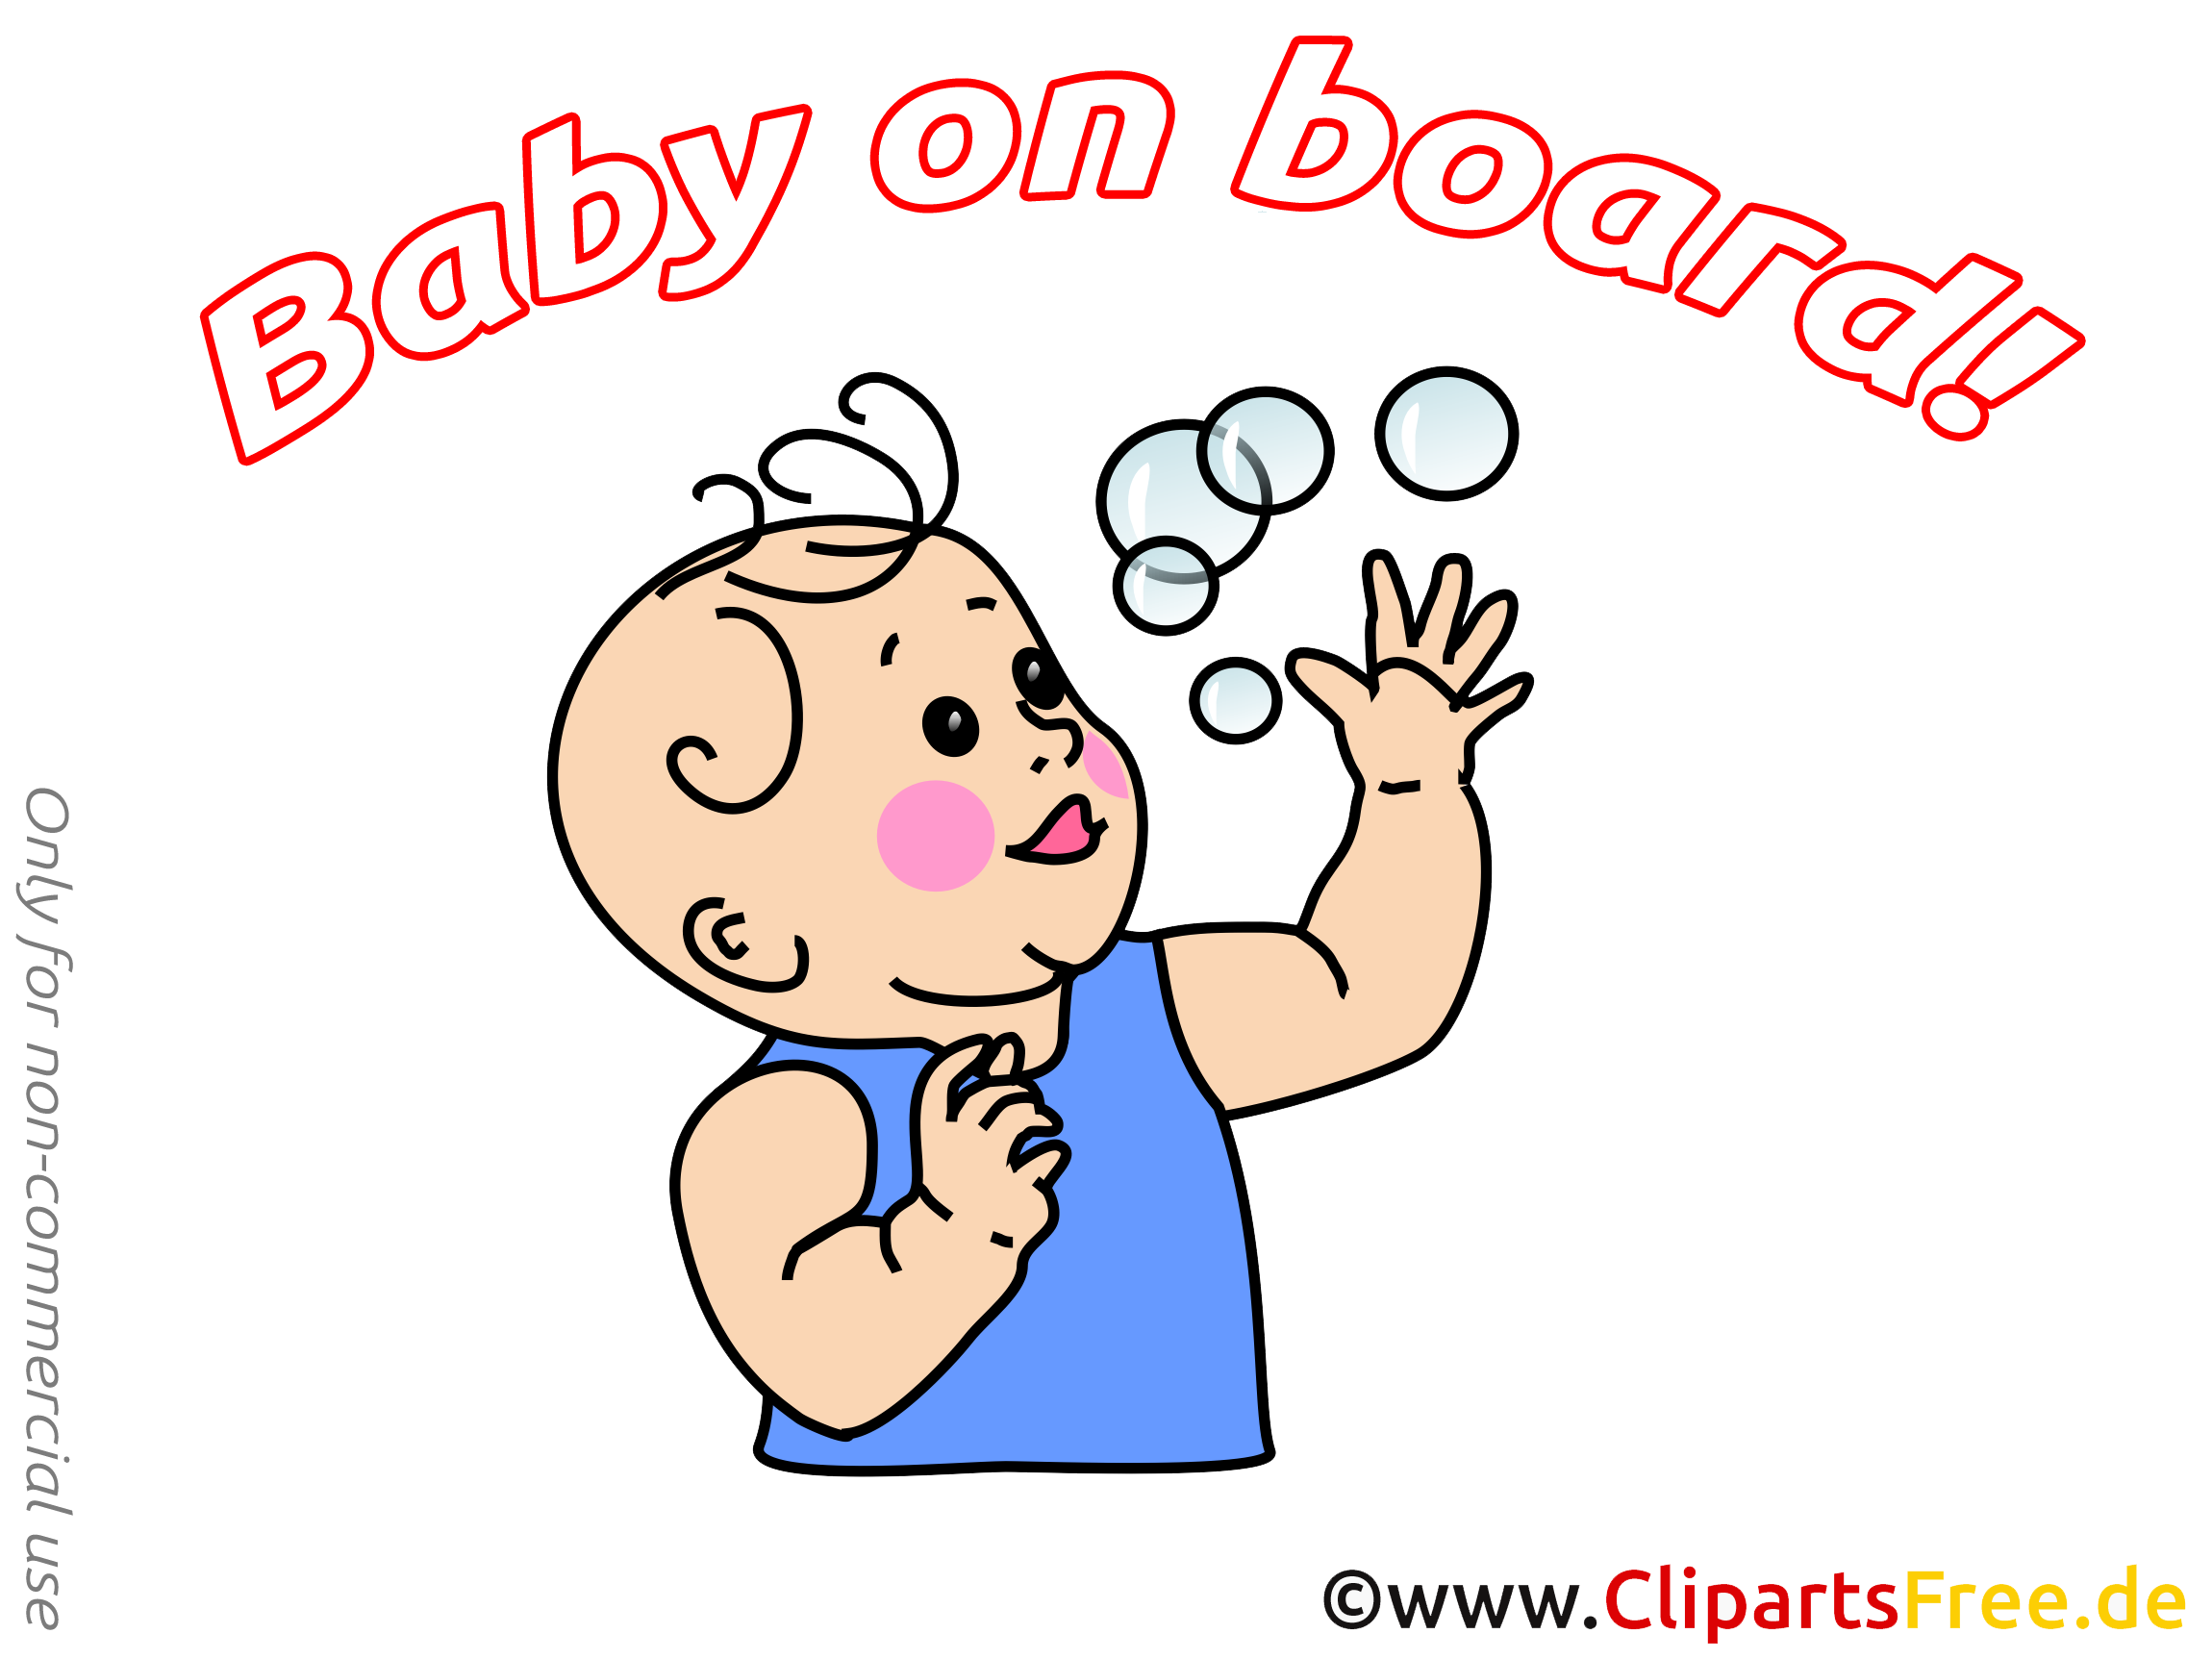 Bulles de savon illustration – Bébé à bord images